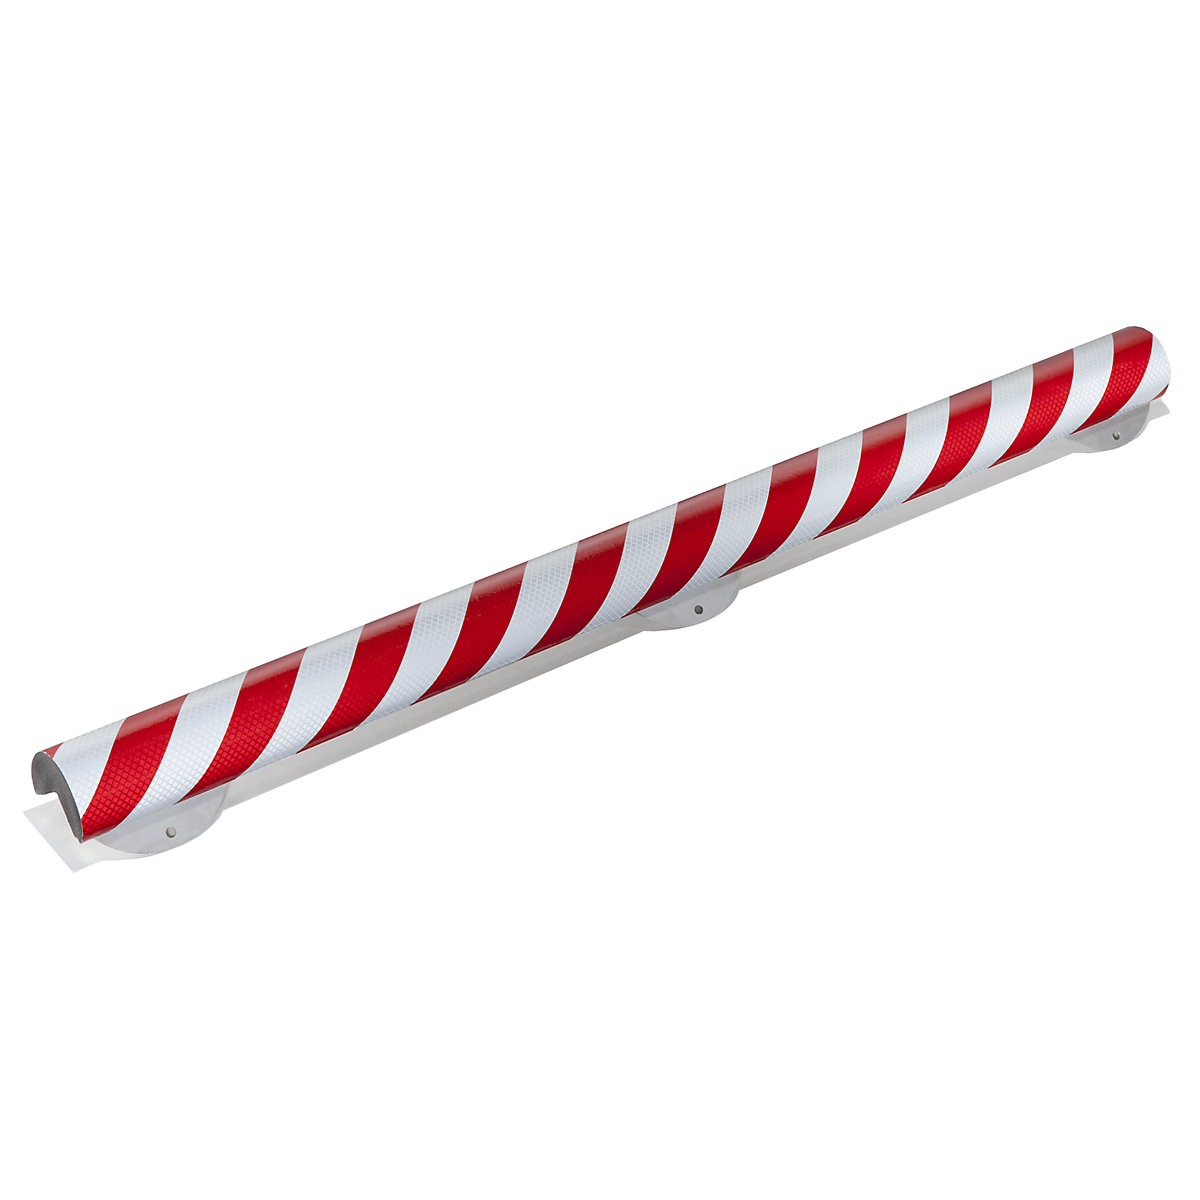 Protecție pentru colț Knuffi® cu șină de montaj – SHG, tip A+, bucată de 1 m, roșu / alb reflectorizant